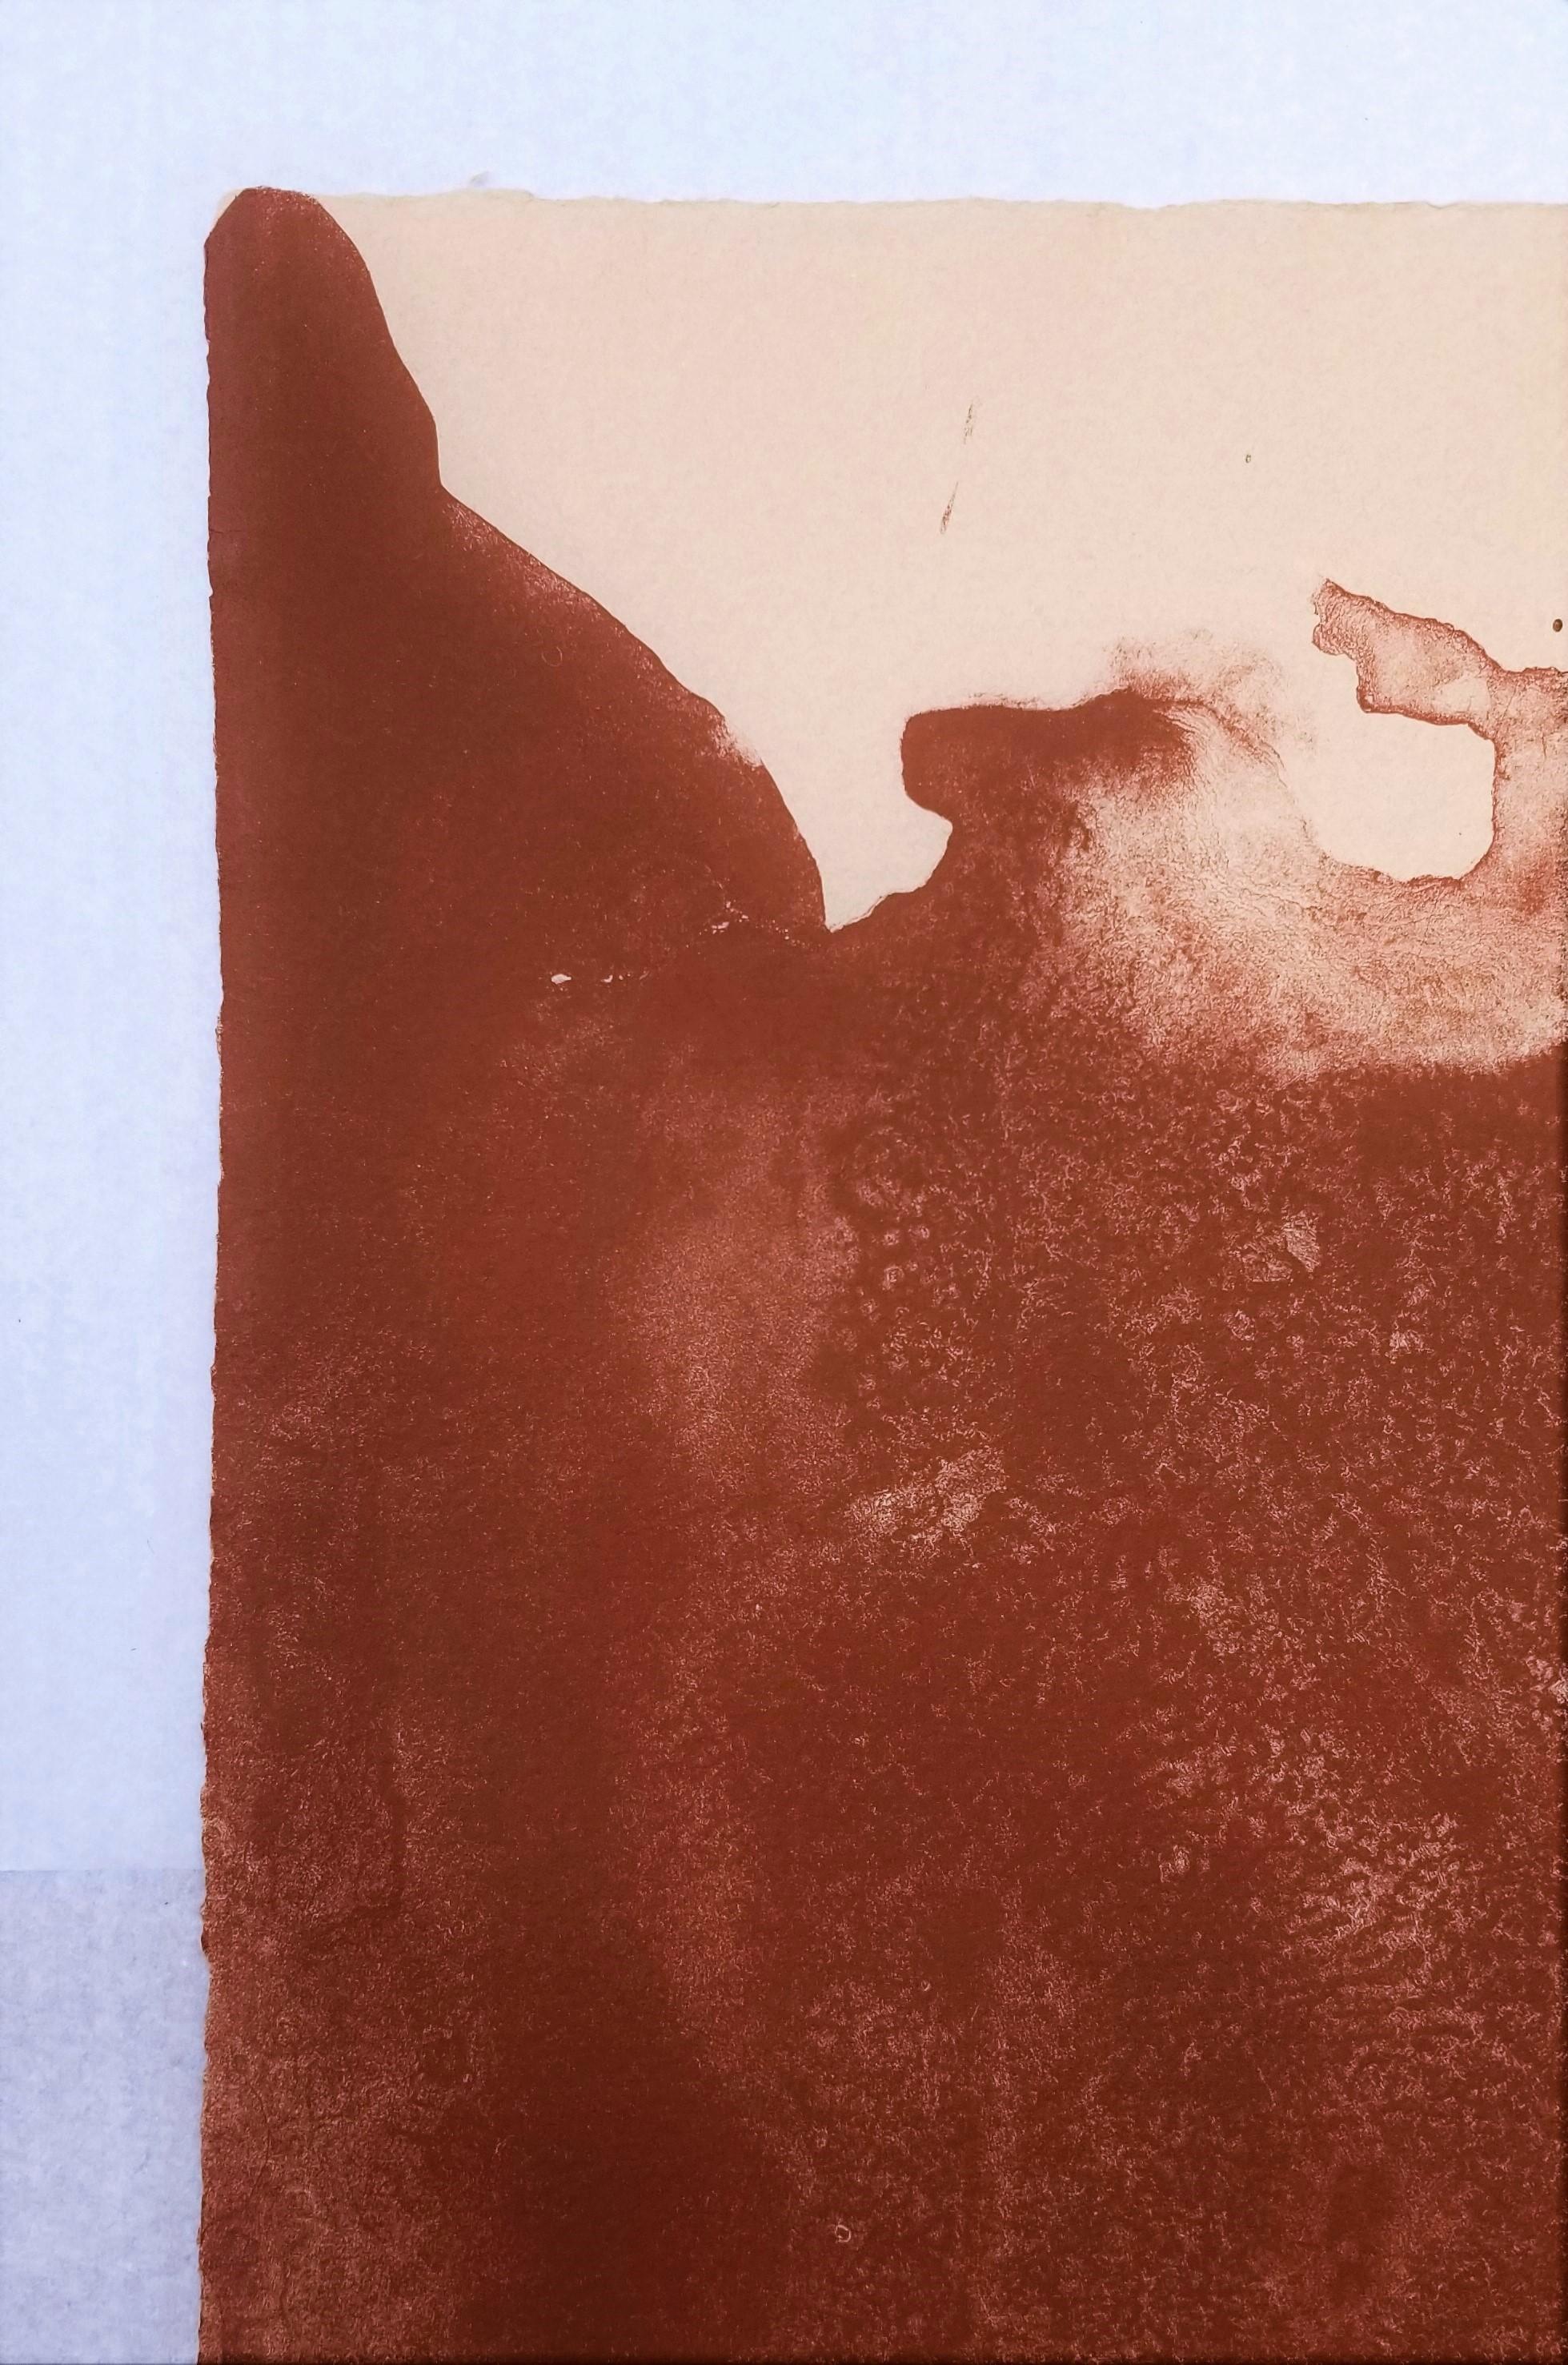 Artist: Helen Frankenthaler (American, 1928-2011)
Title: 